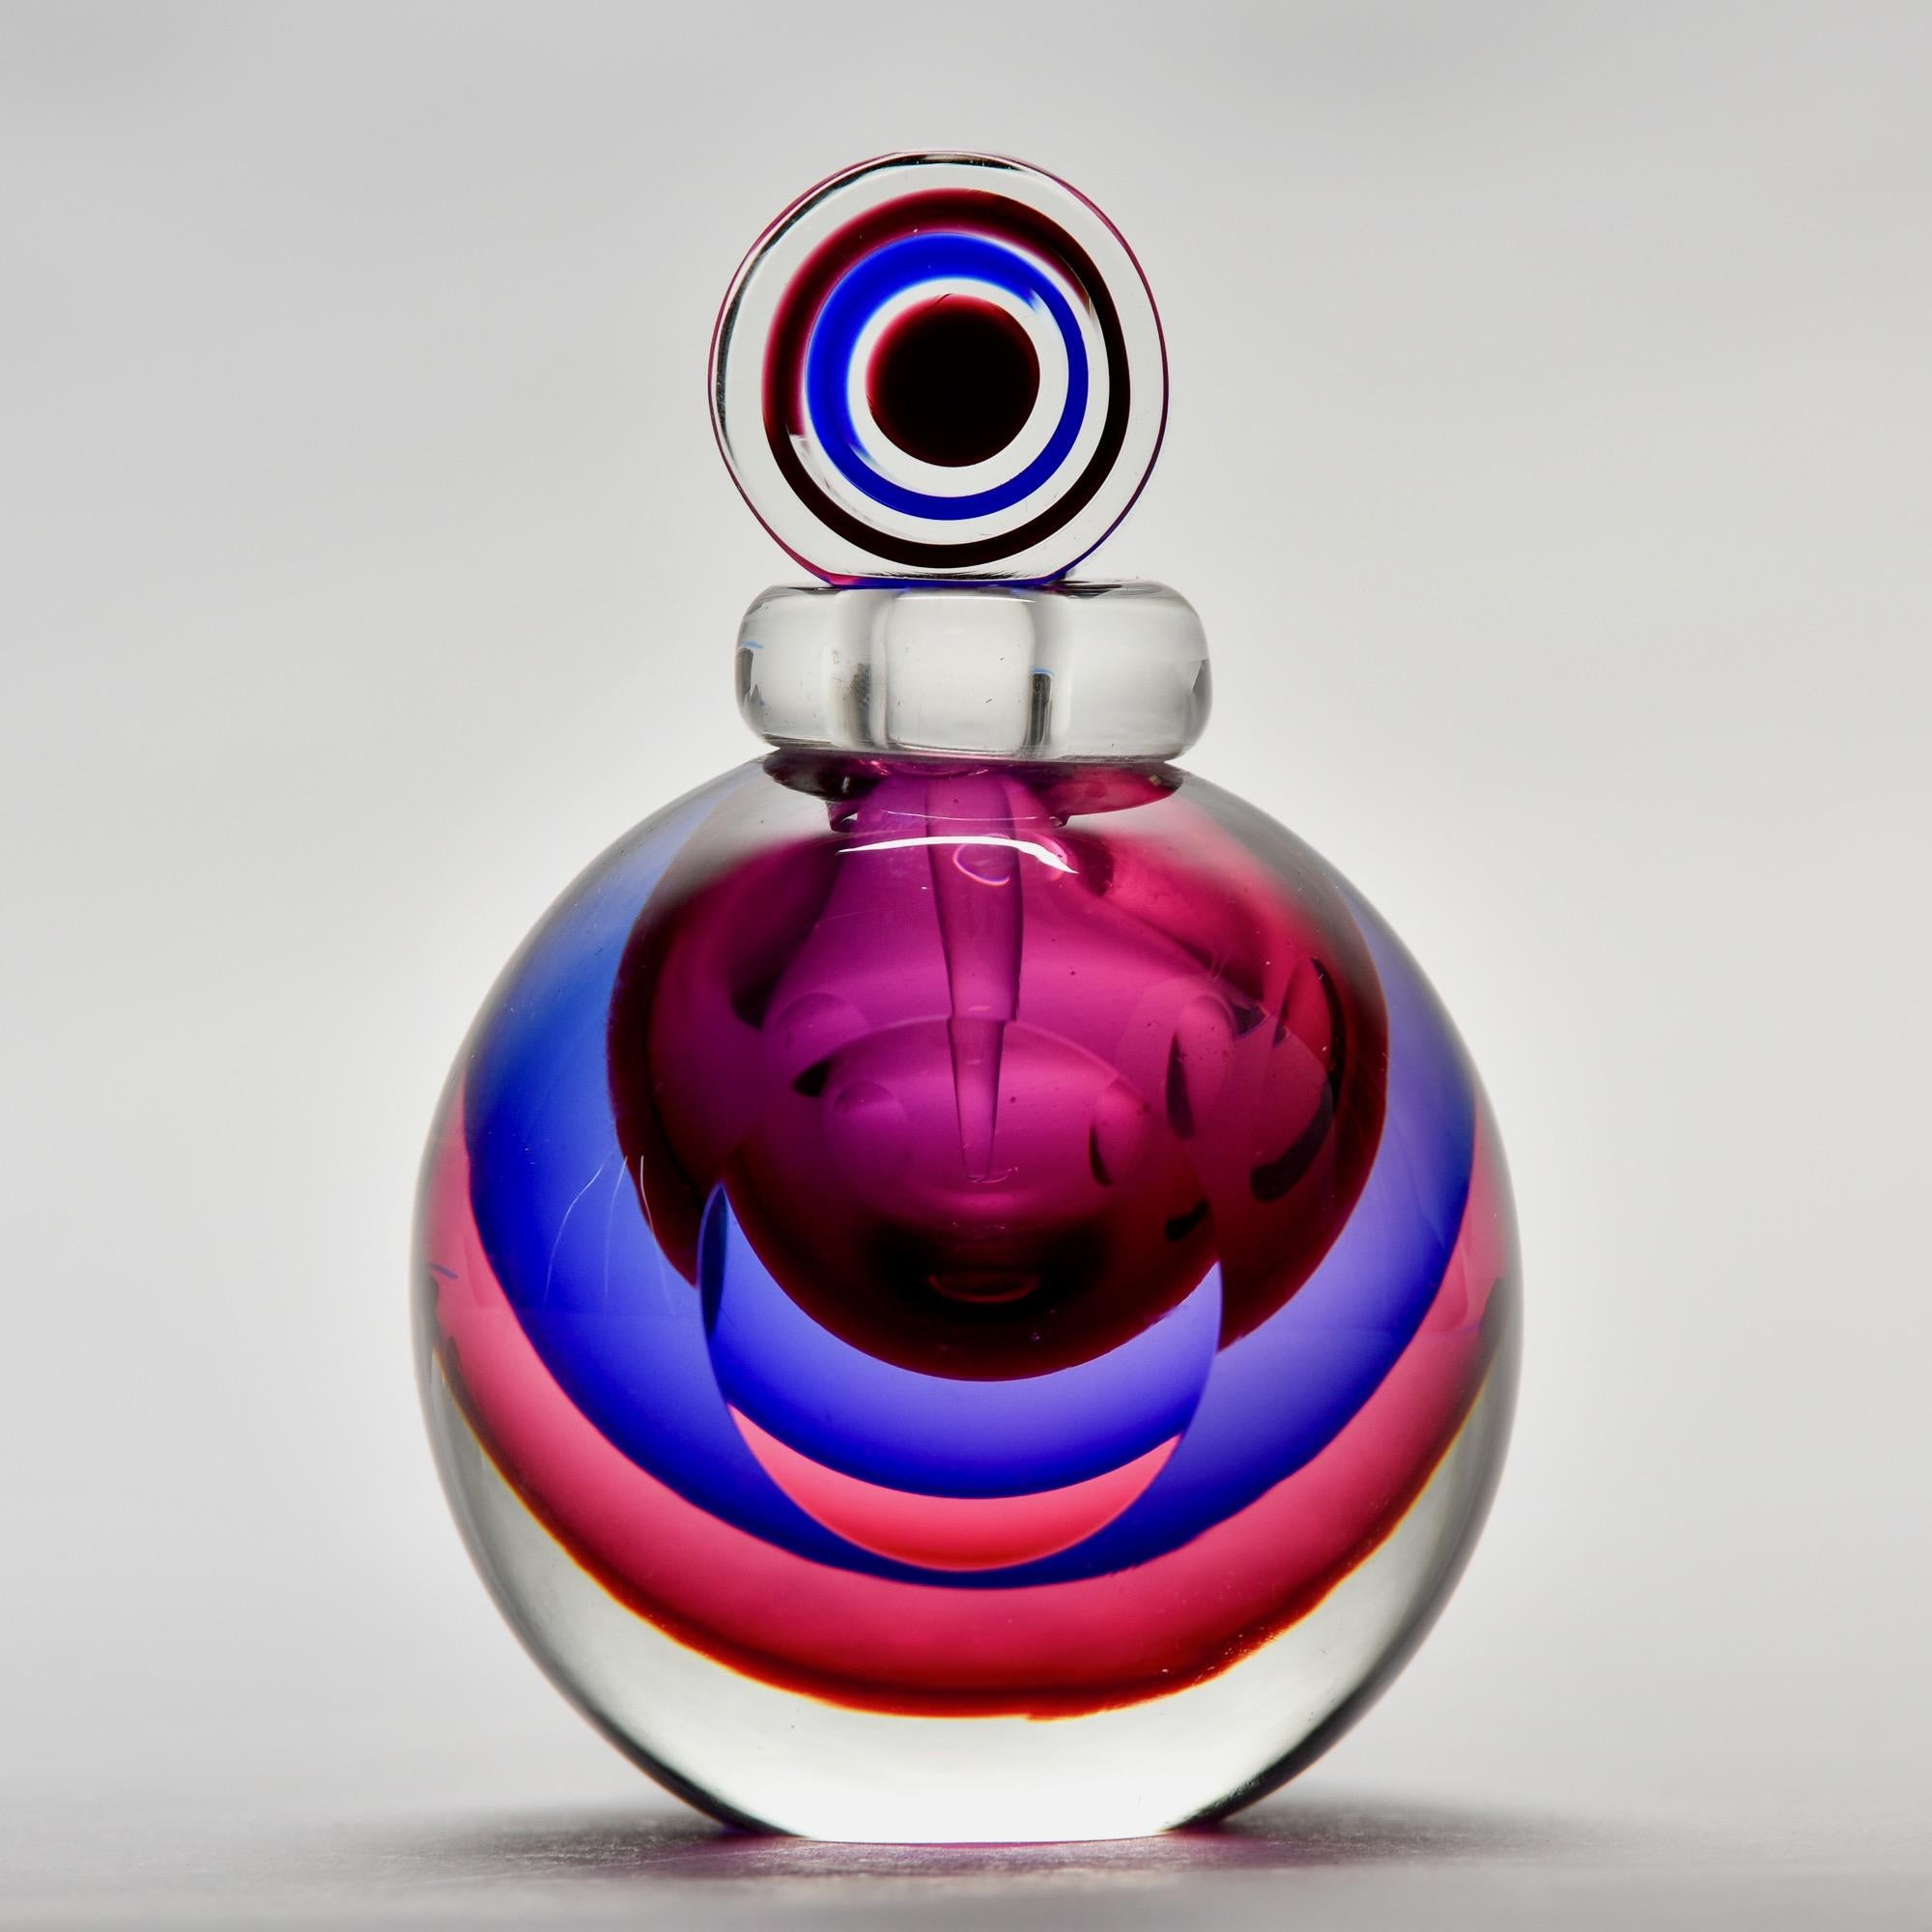 Le nouveau flacon de parfum rond en verre de Murano présente une classe lourde et claire avec des couches de fuchsia, de violet et de baies dans le style sommerso. La partie supérieure est munie d'un tampon odorant. Non signée. 

Nouveau, sans